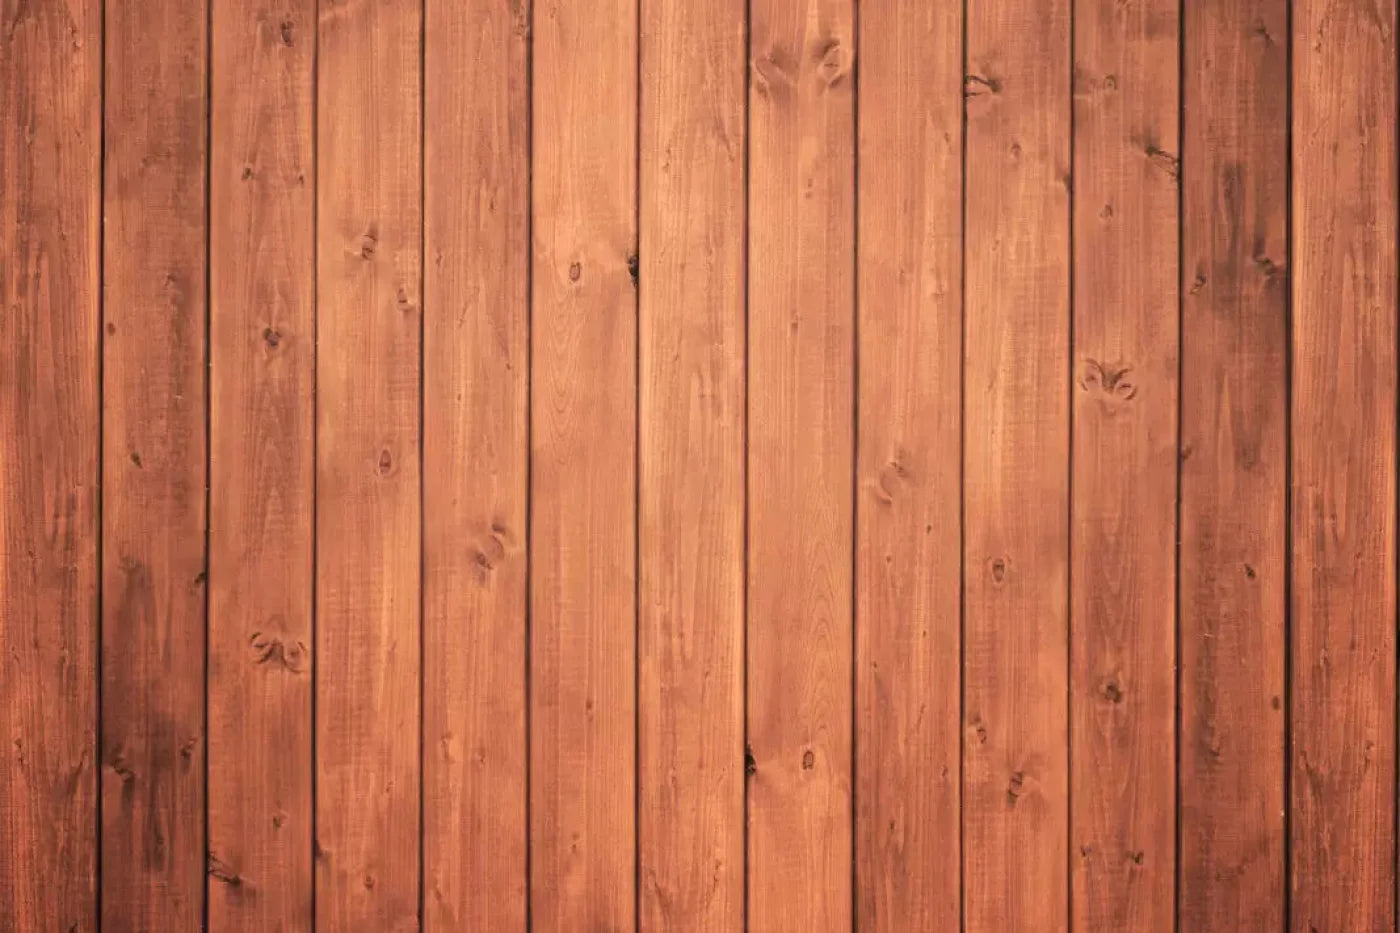 Warm Wooden Wall 5X4 Rubbermat Floor ( 60 X 48 Inch ) Backdrop